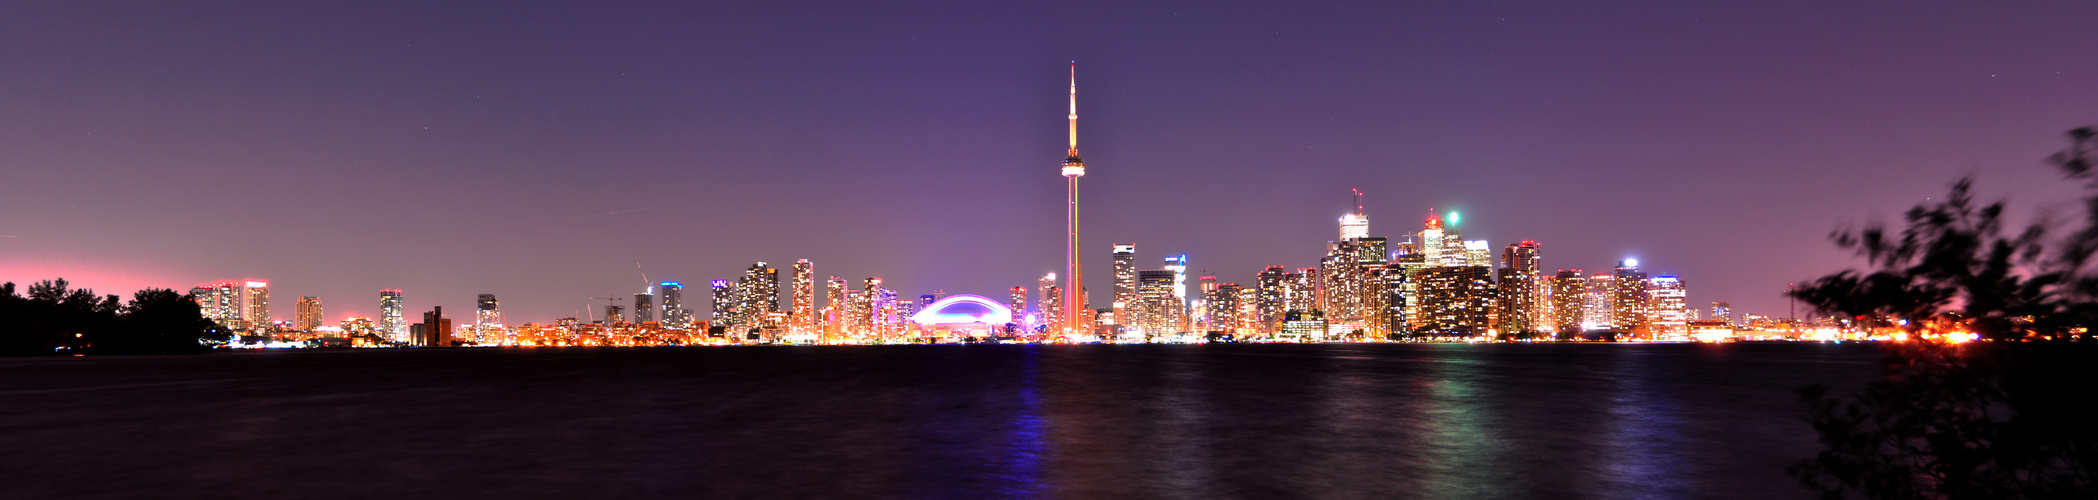 Toronto Skyine by night